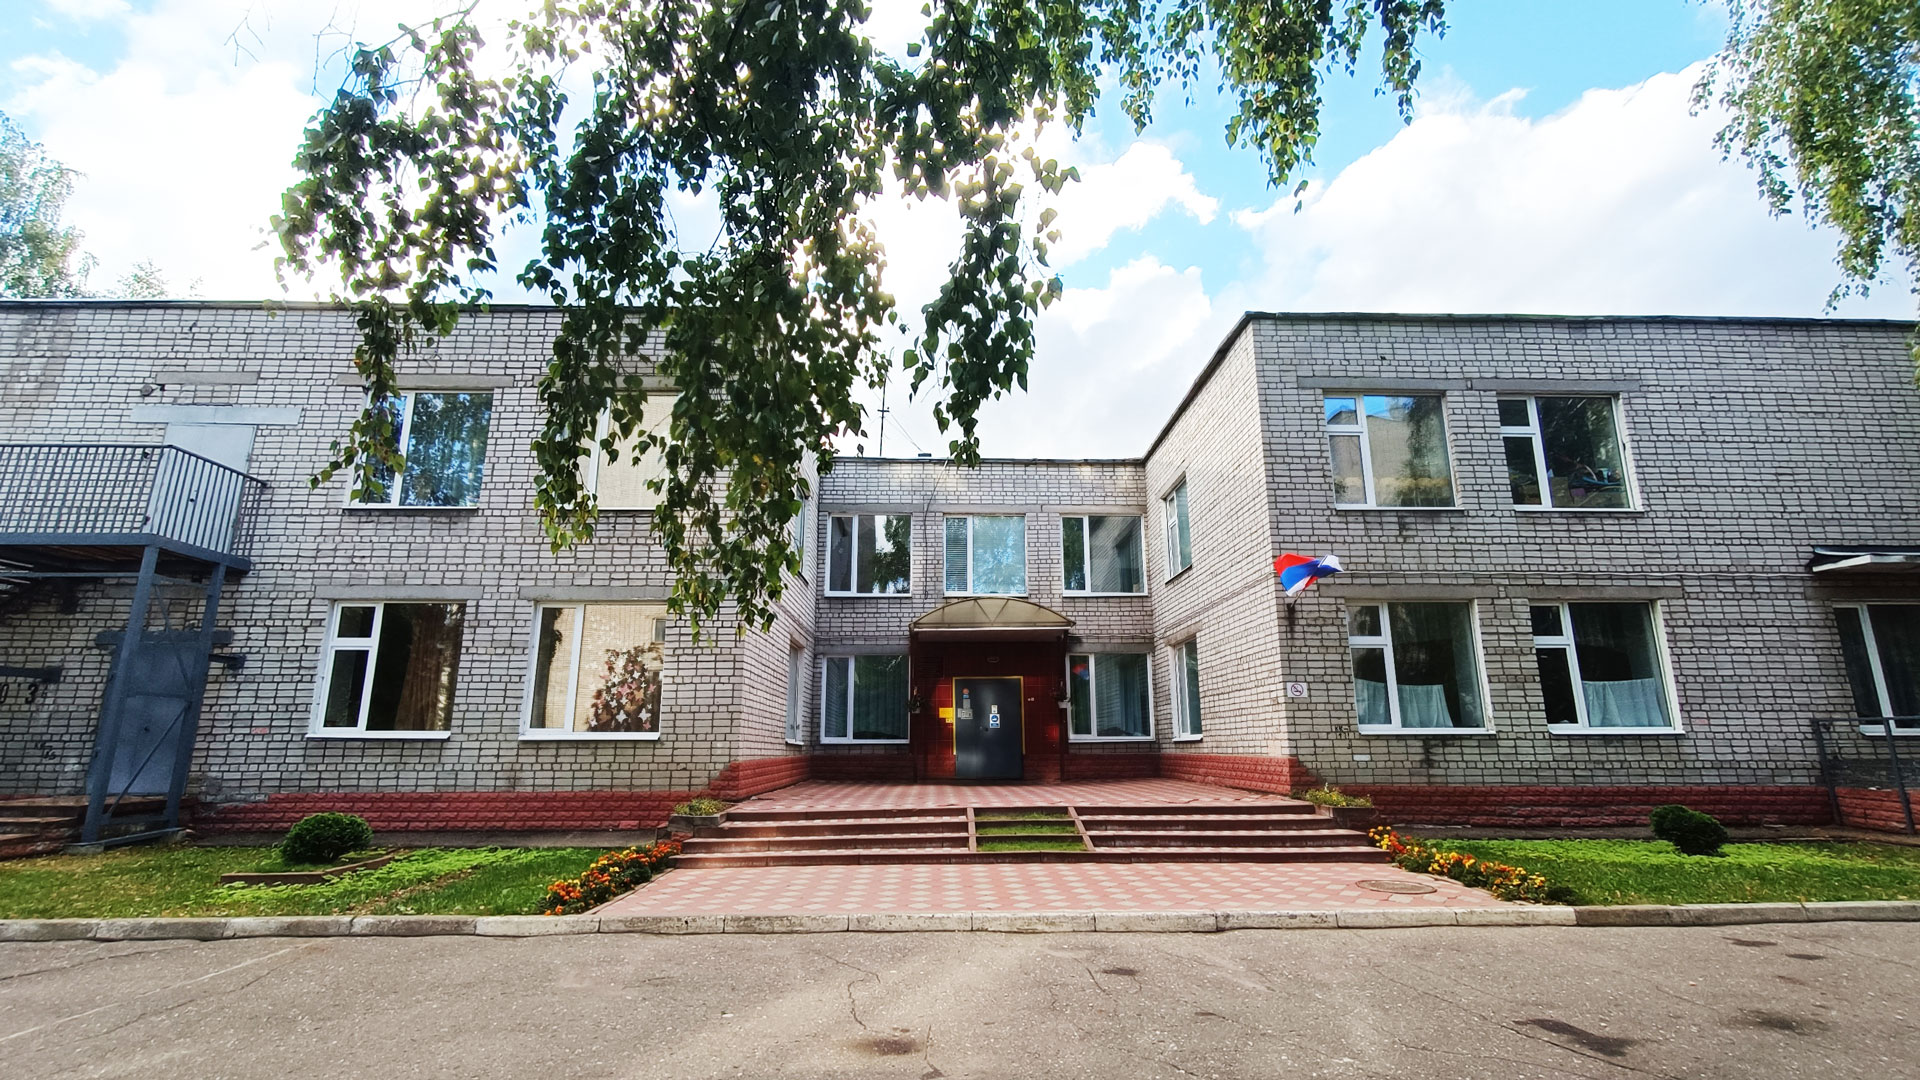 Детский сад 102 Ярославль: общий вид здания.